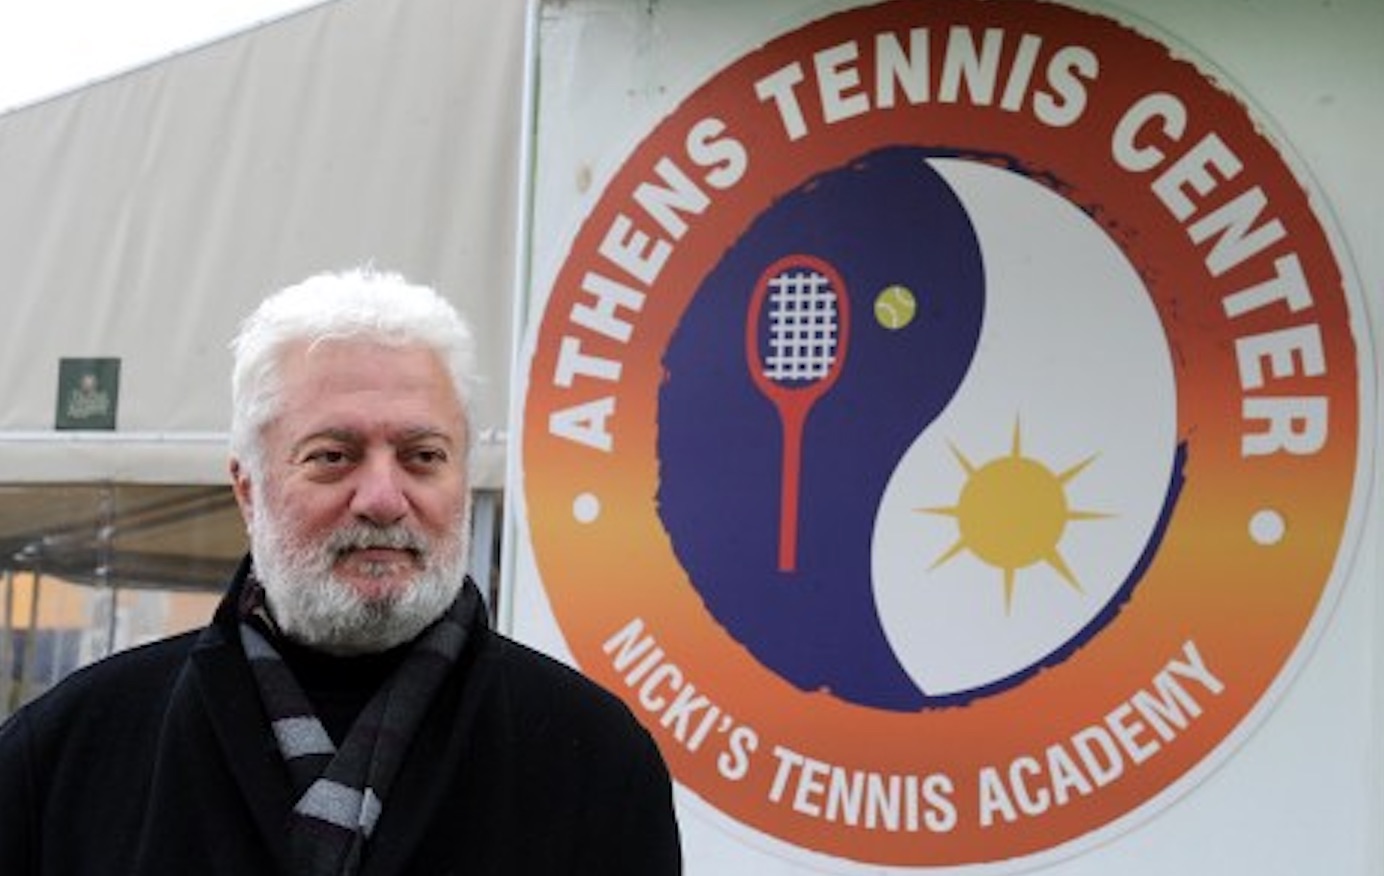 Σερκεδάκης: “Όχι άλλες χαμένες ευκαιρίες για το Ελληνικό τένις”